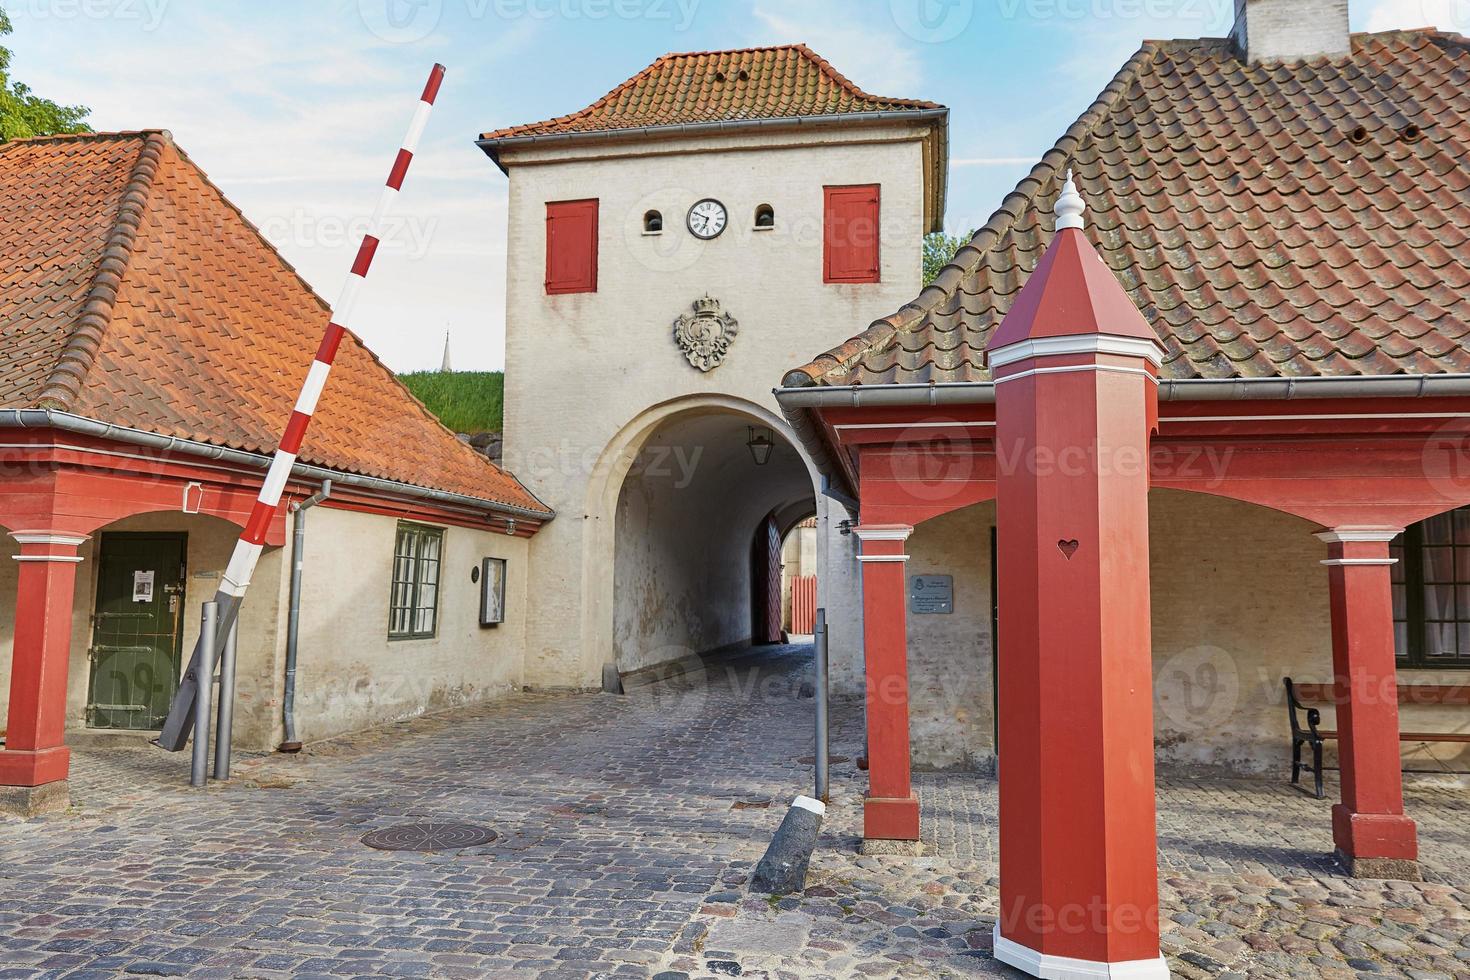 rode huizen in het historische fort Kastellet in Kopenhagen foto